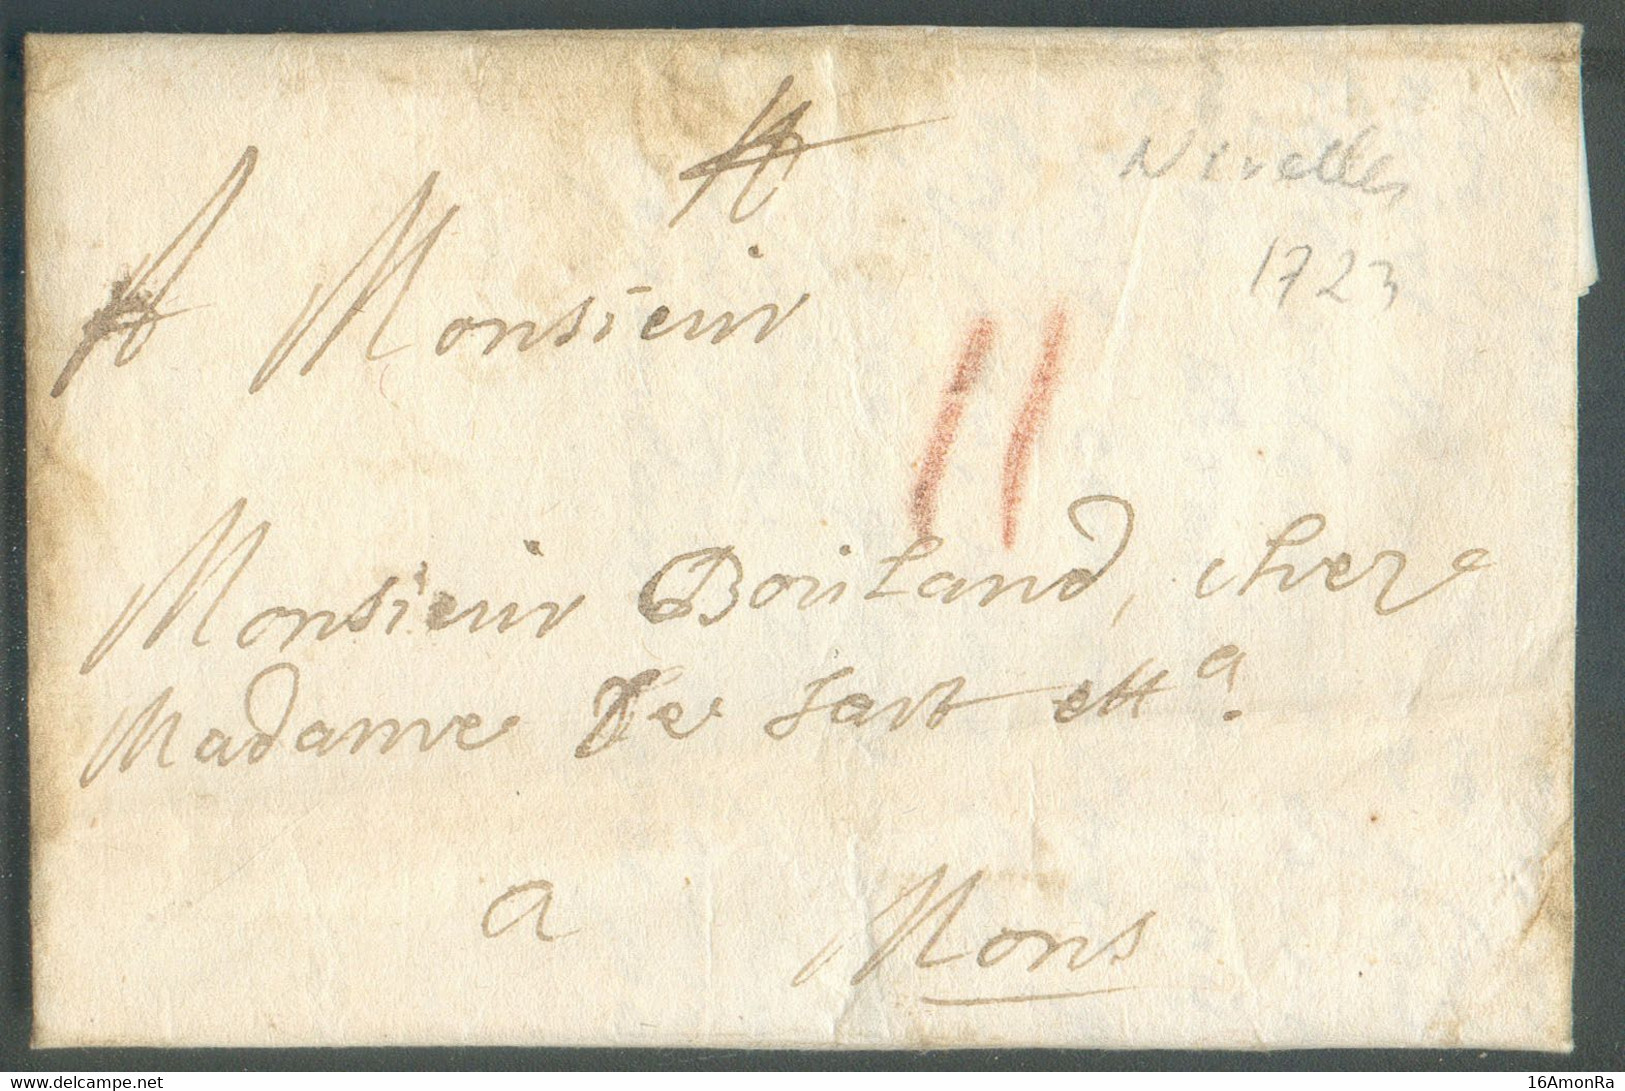 LAC De NIVELLES Le 24 Juin 1723 Vers Mons; Port 'II' à La Craie Rouge. - 19900 - 1714-1794 (Pays-Bas Autrichiens)